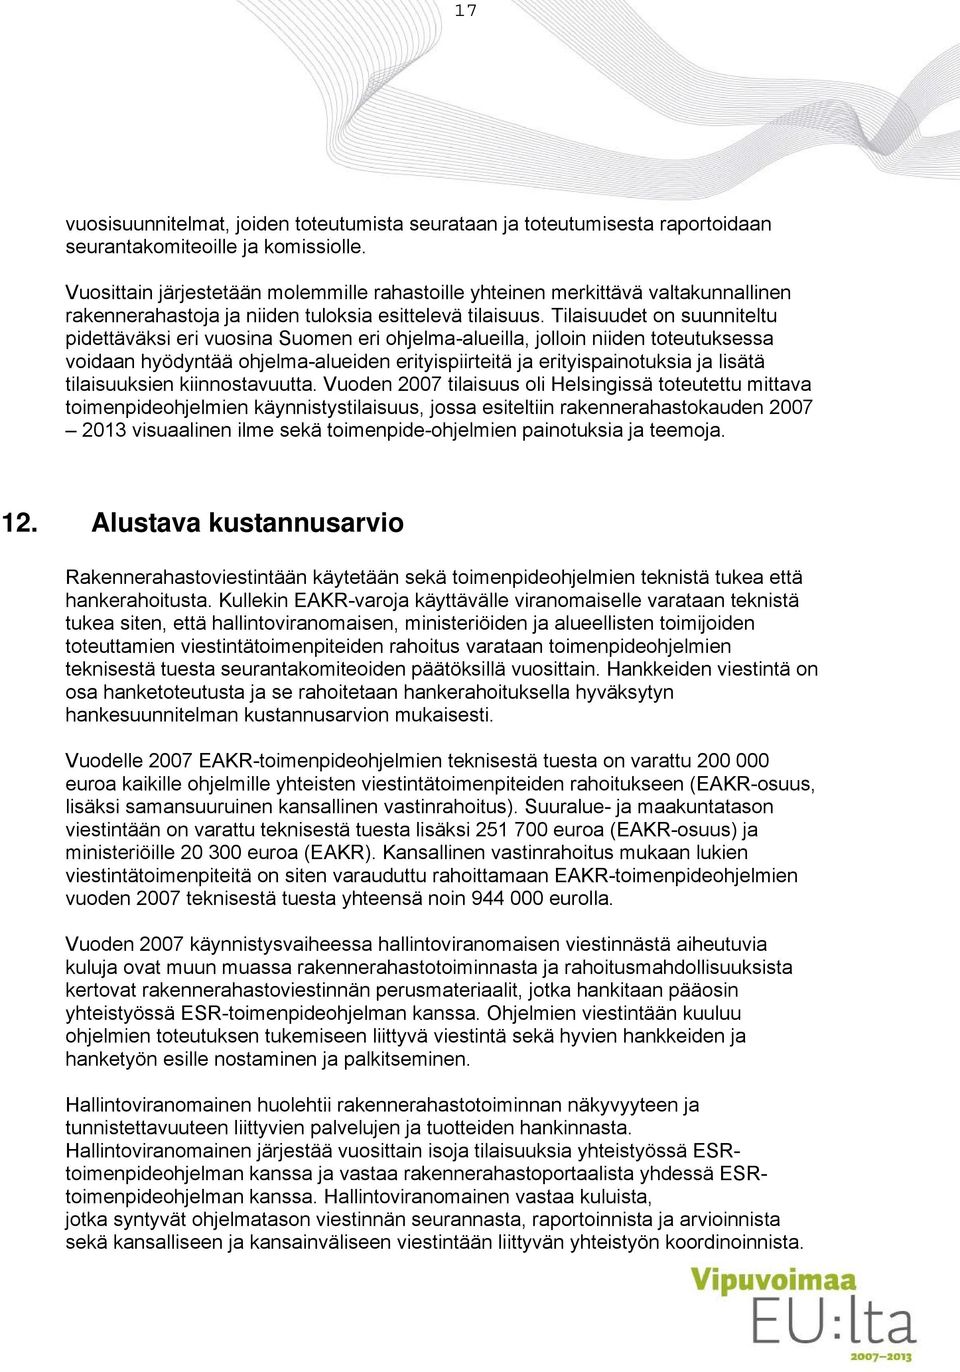 Tilaisuudet on suunniteltu pidettäväksi eri vuosina Suomen eri ohjelma-alueilla, jolloin niiden toteutuksessa voidaan hyödyntää ohjelma-alueiden erityispiirteitä ja erityispainotuksia ja lisätä